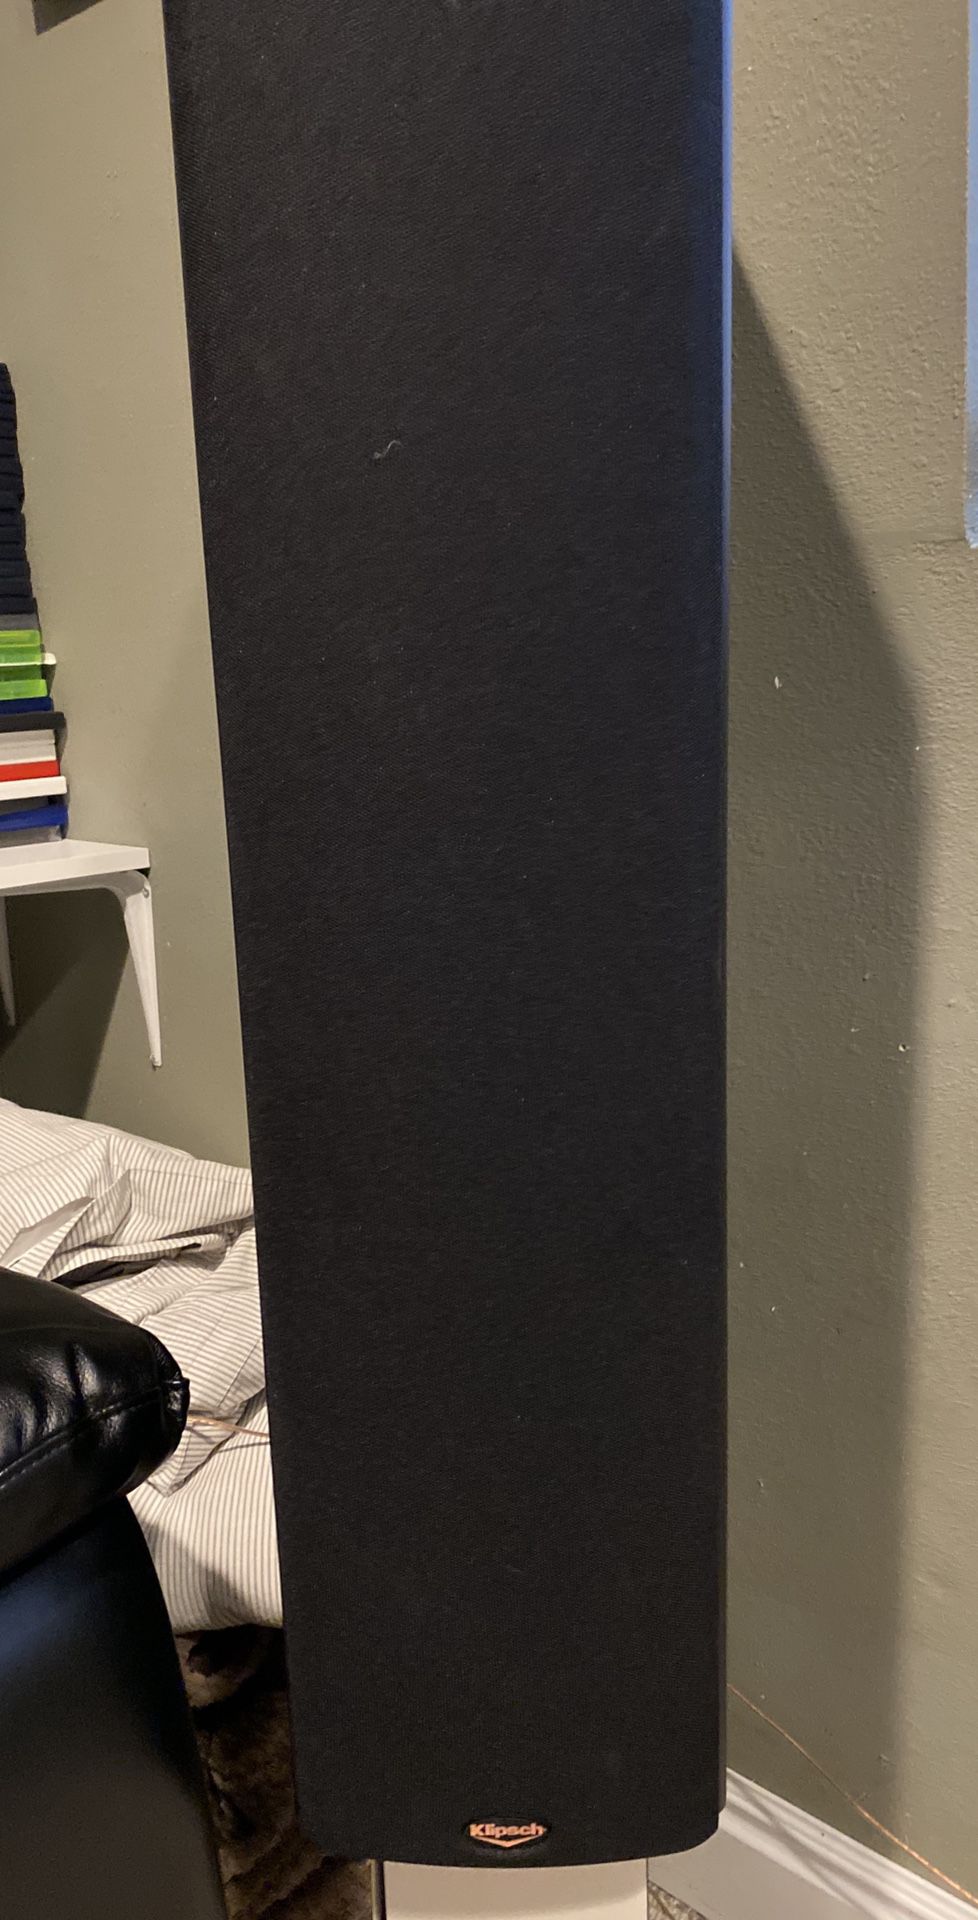 Klipsch surround speaker set